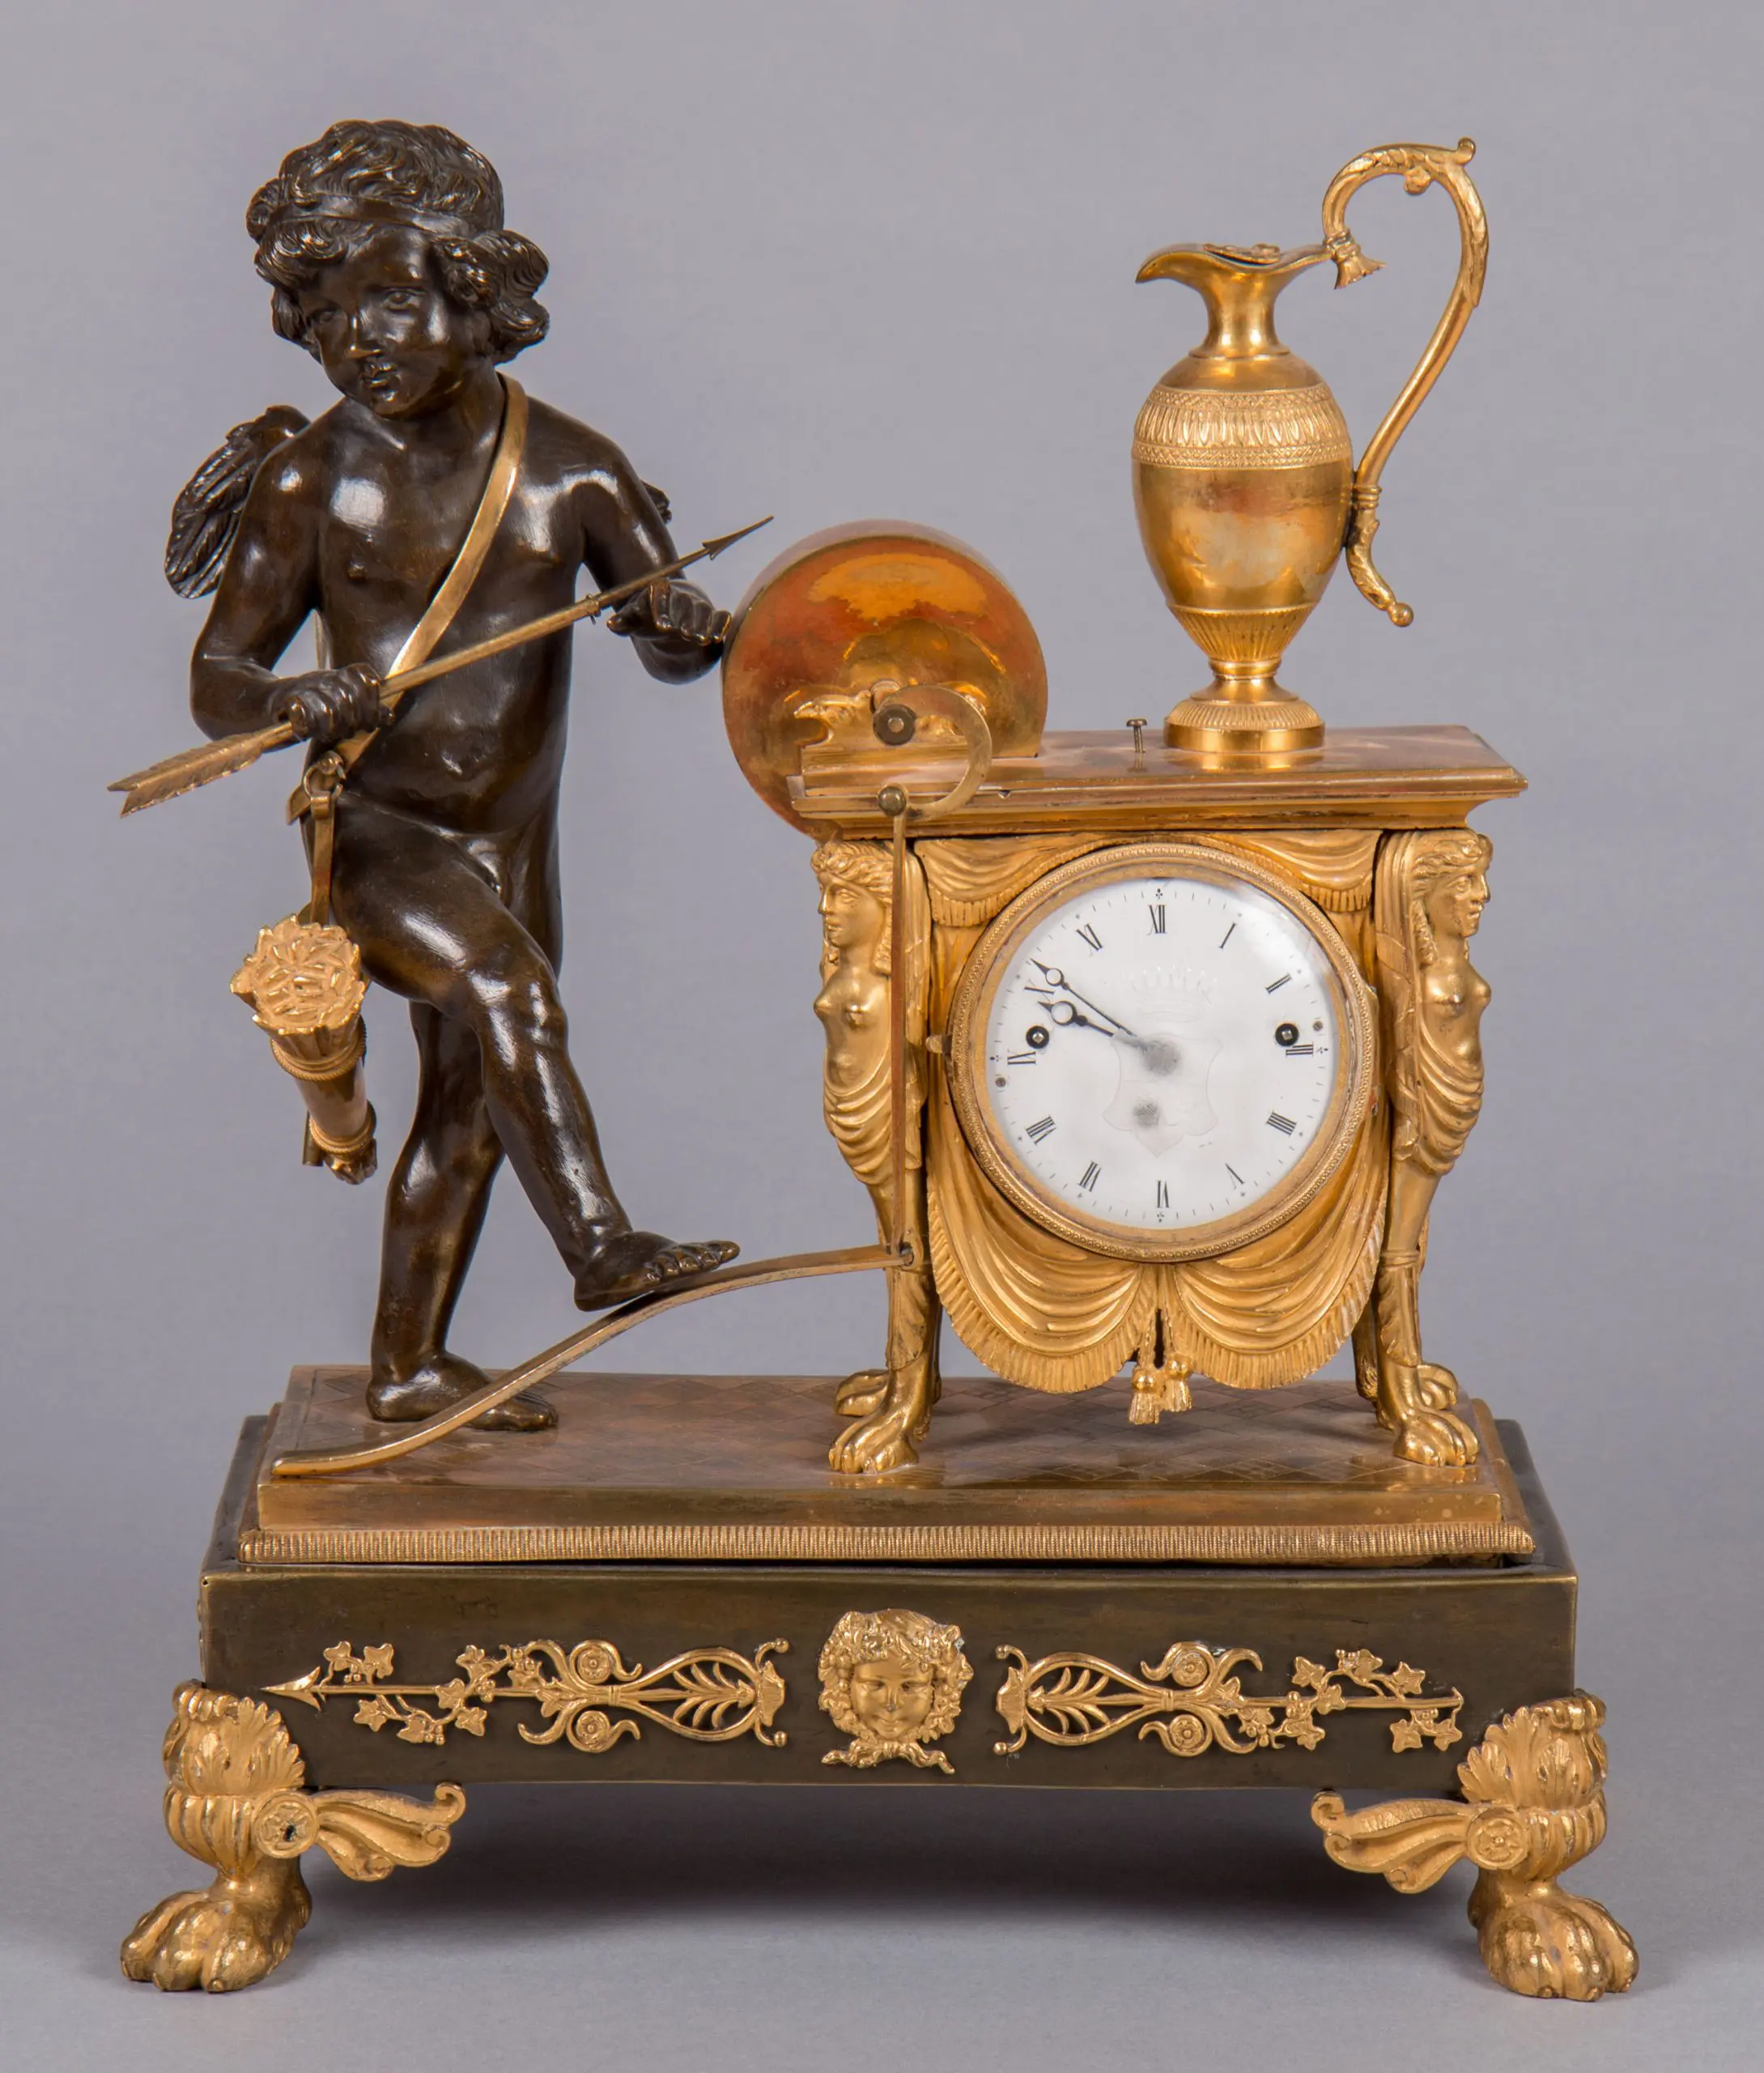 Figural empire mantel clock “Amor” - Stephan Andréewitch | Silberketten